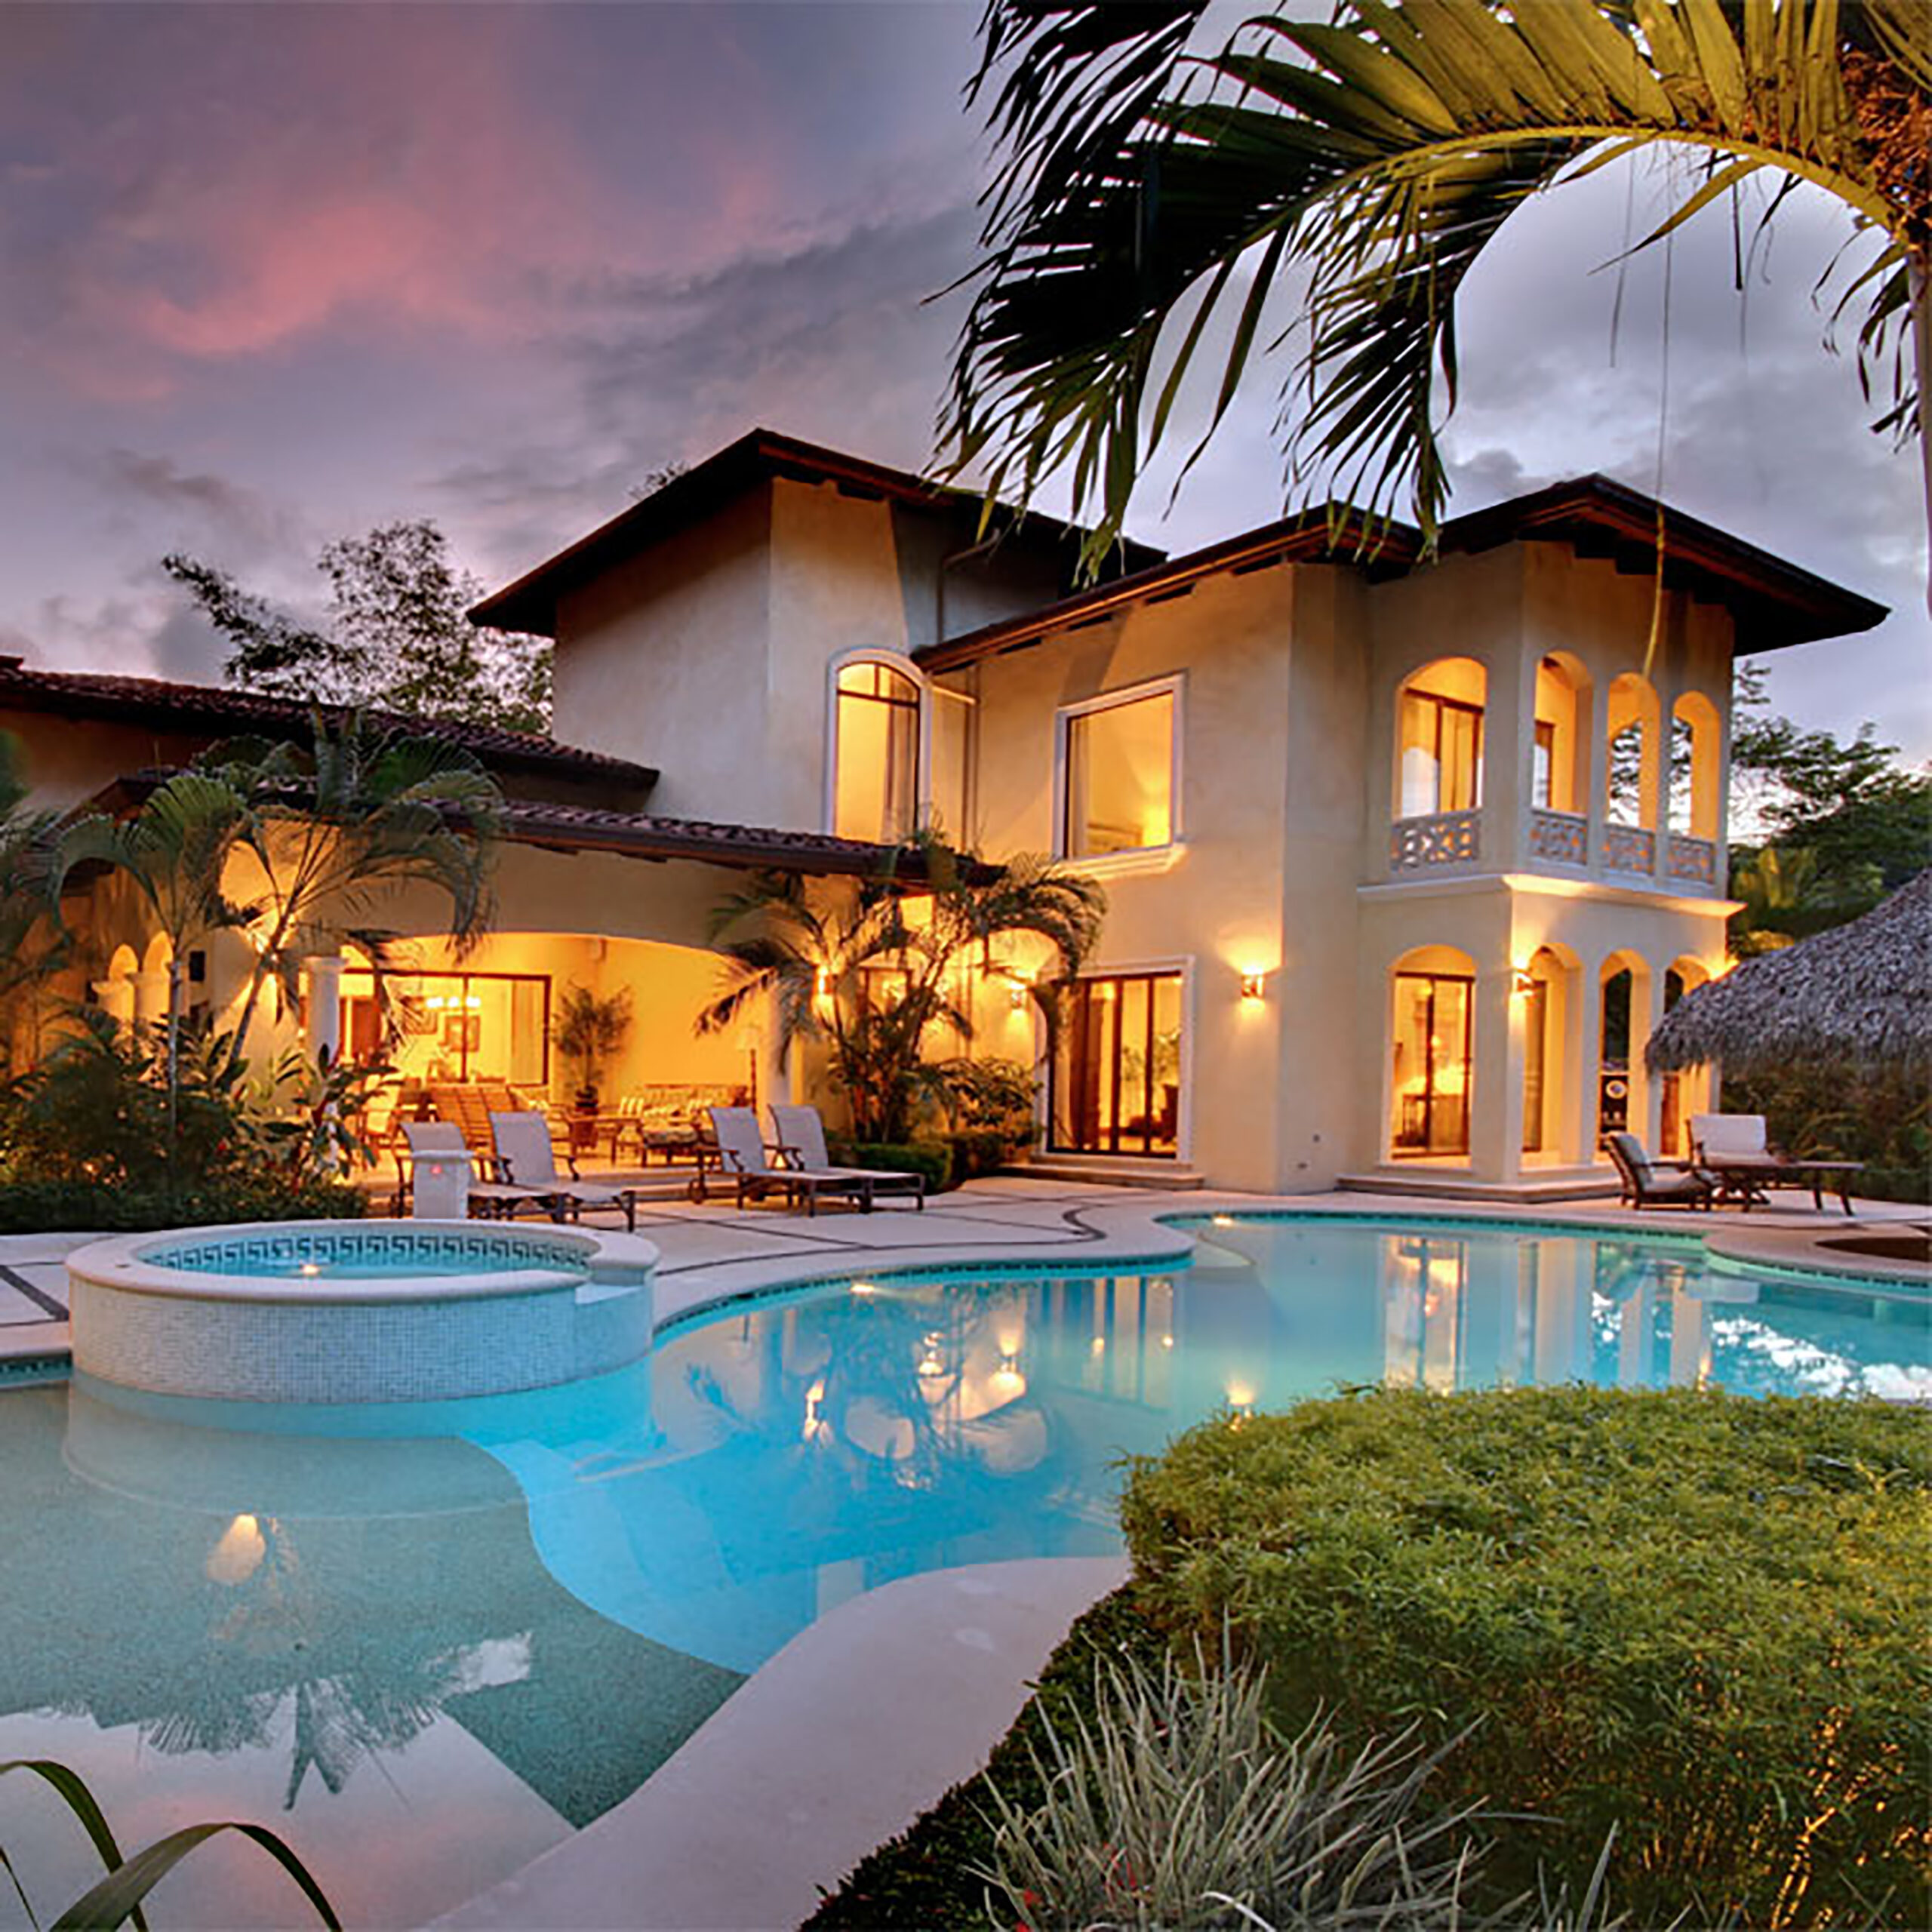 Paradise house